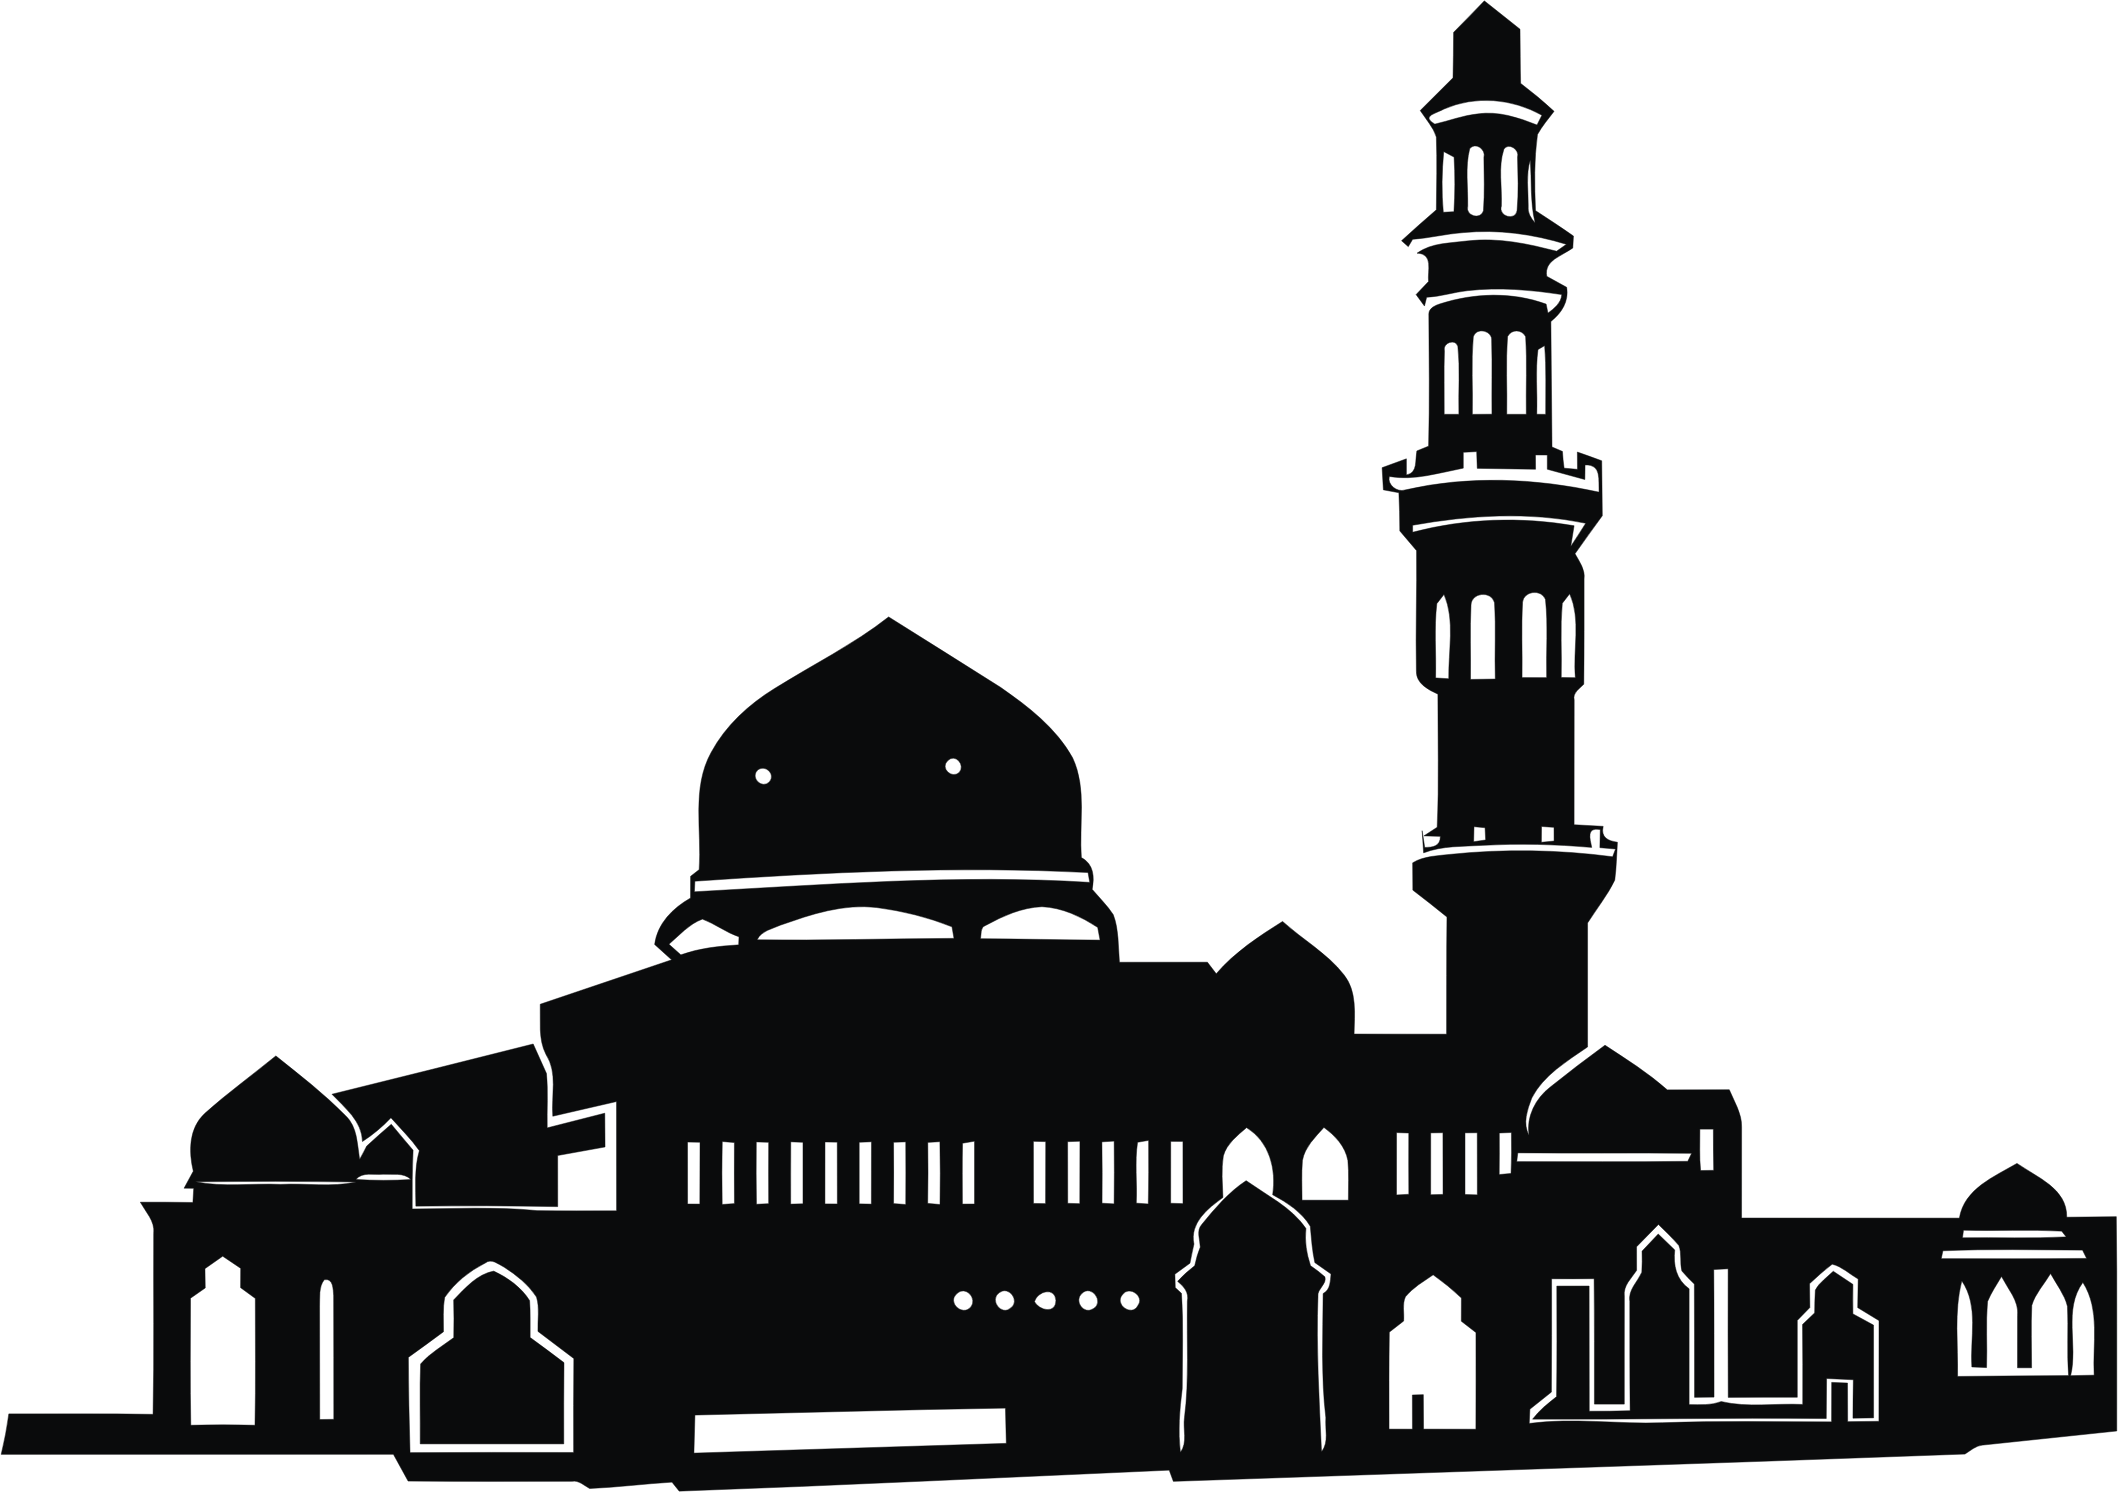 Mosque clipart logo, Mosque logo Transparent FREE for